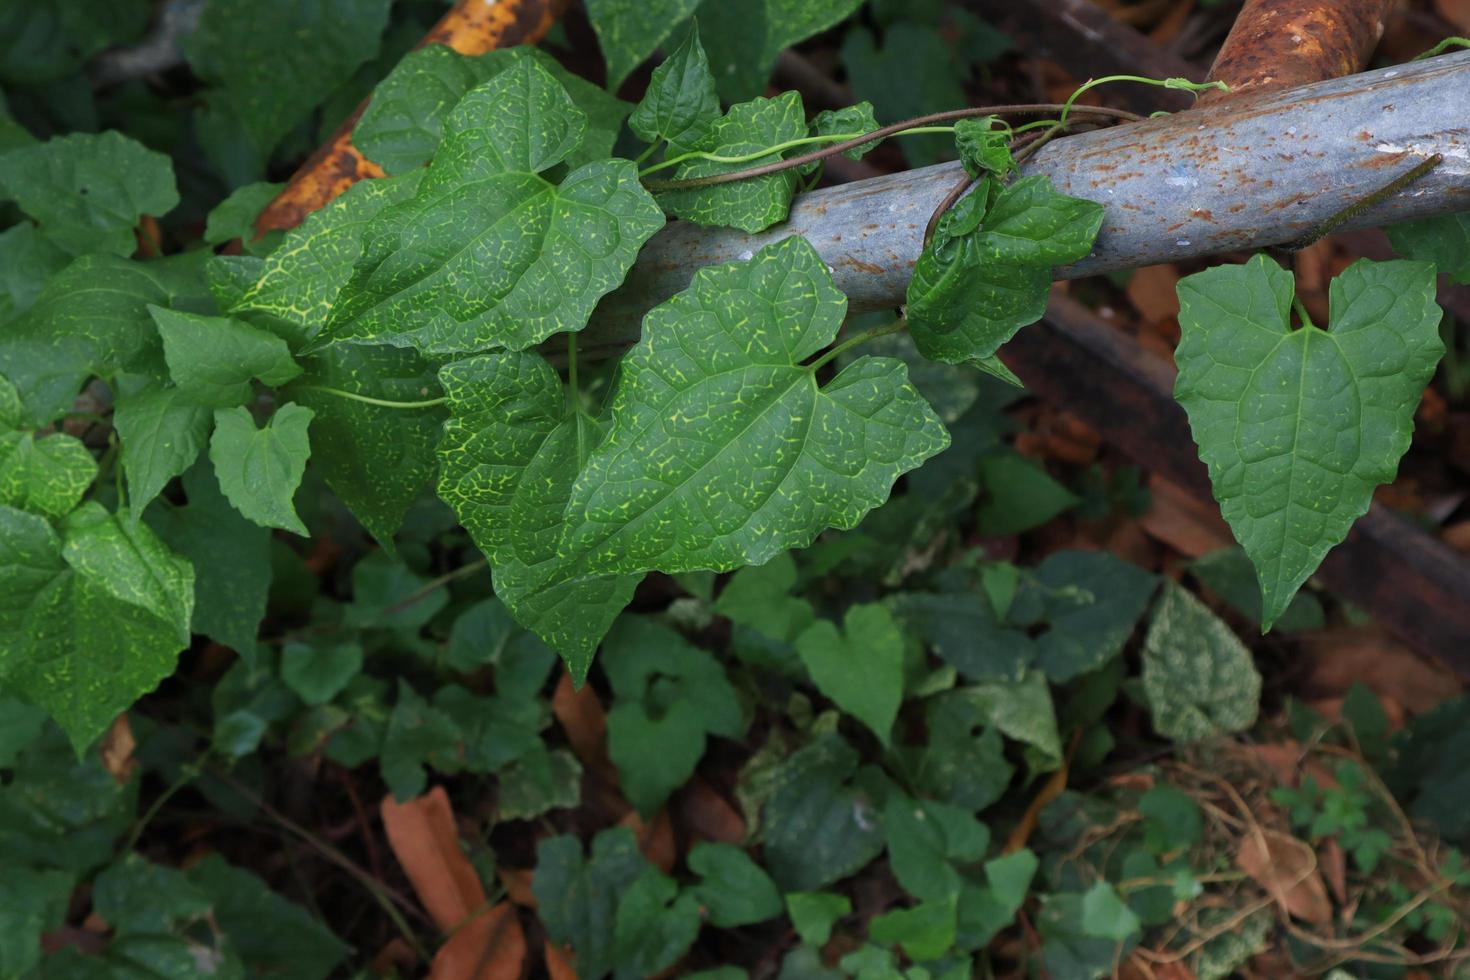 Efeukürbis oder coccinia grandis-Blatt. Schließen Sie die exotischen grünen Blätter des Efeubodenbaums im Garten mit Morgenlicht. Draufsicht grünes Blatt. foto